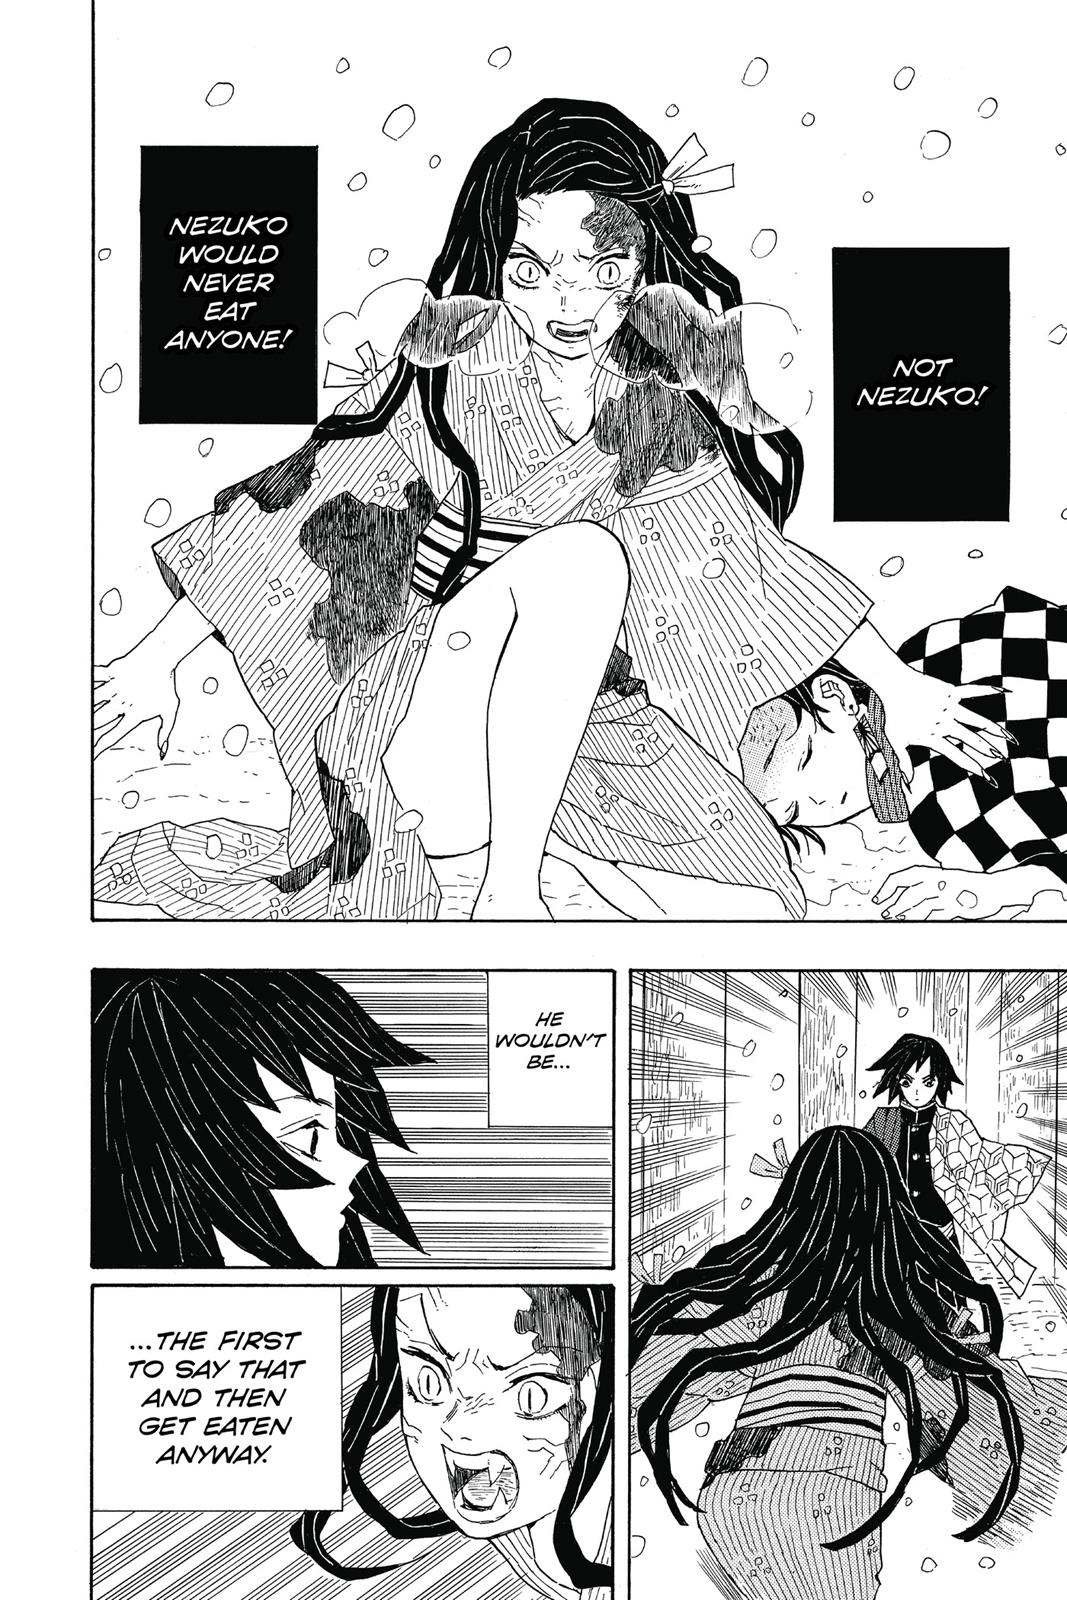 Demon Slayer Manga Manga Chapter - 1 - image 32